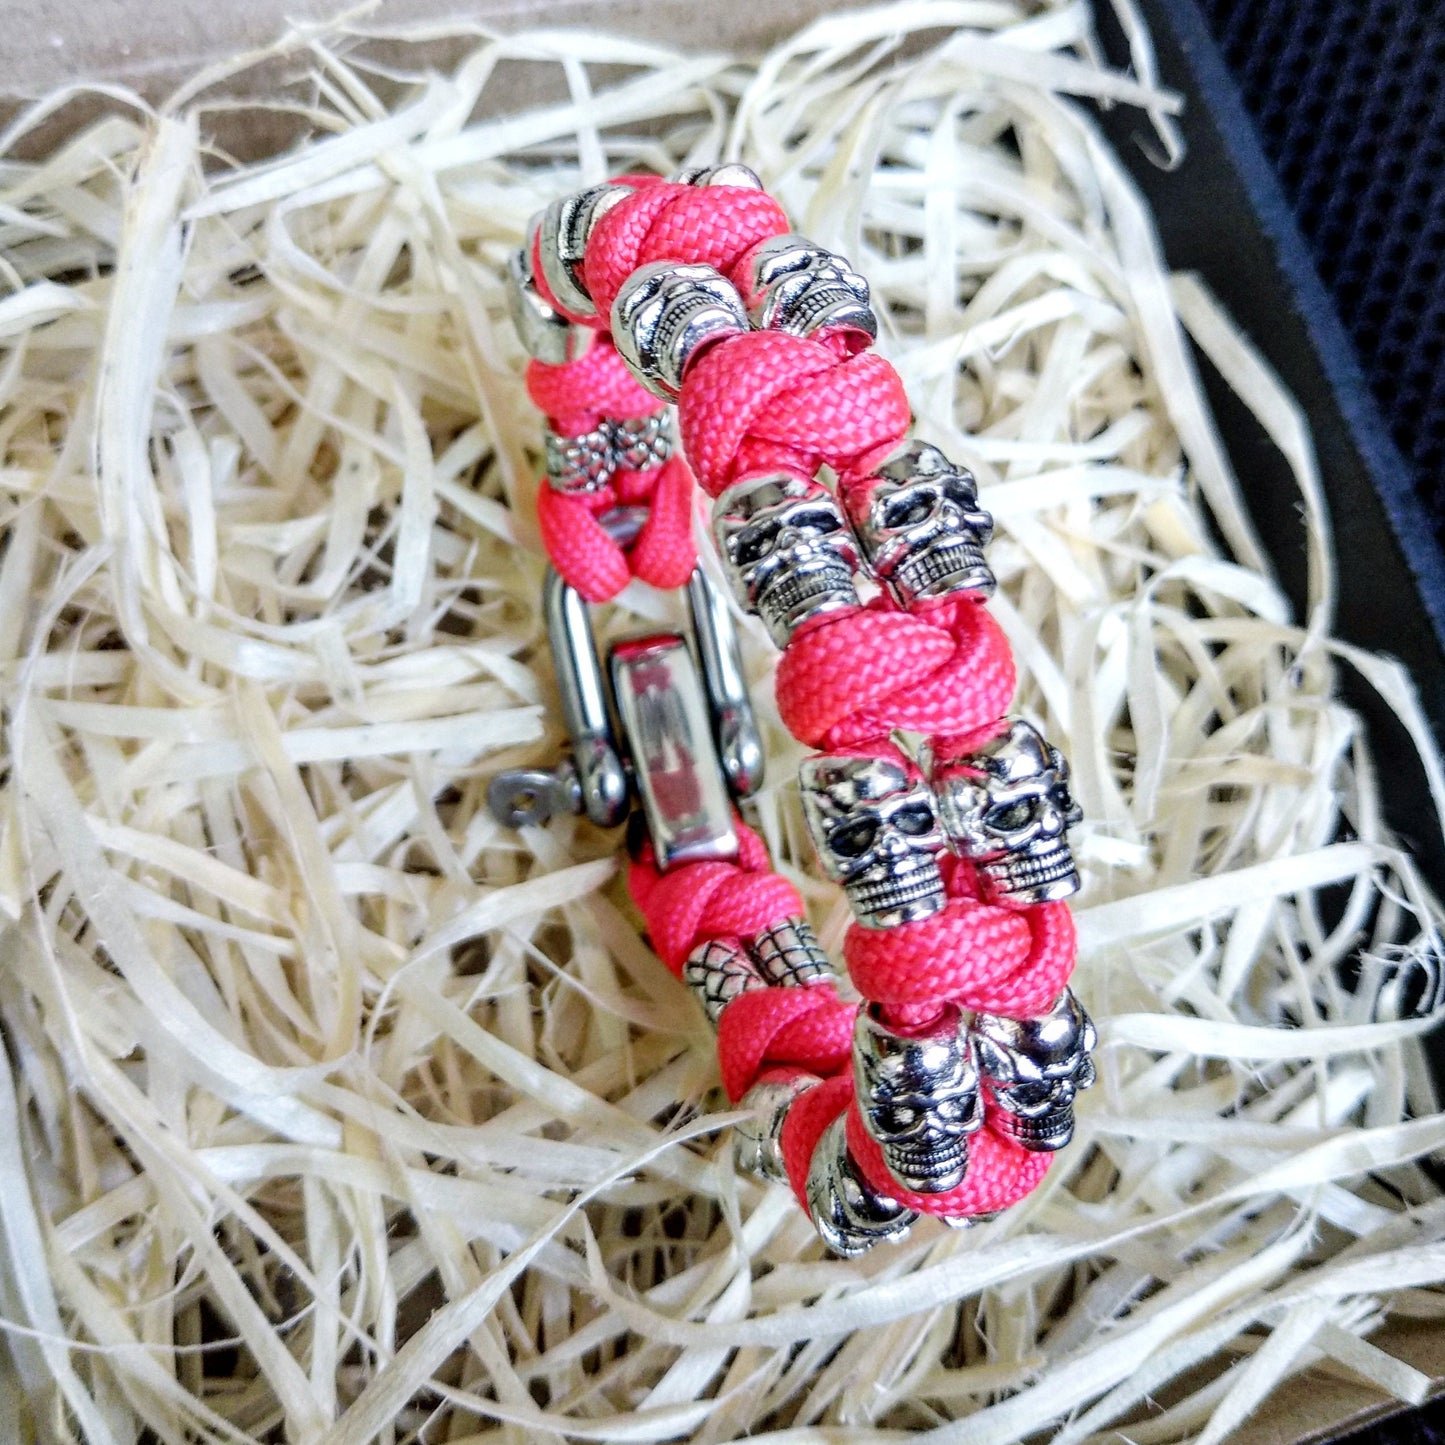 Stylish pink bracelet / Celtic knot / Scandinavian jewelry / Womans skull bangle /